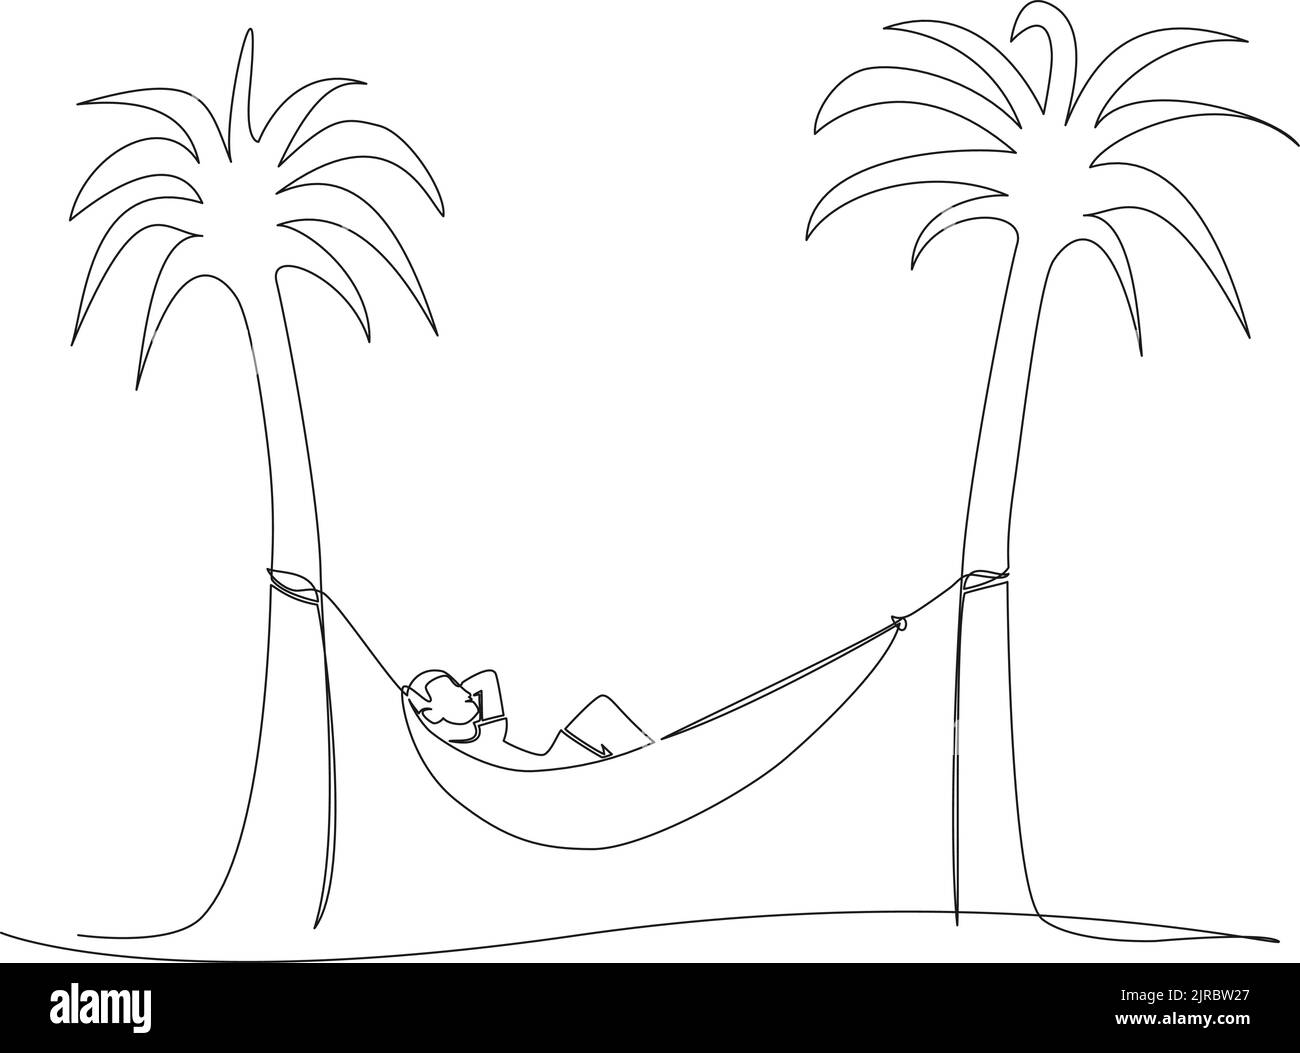 dessin continu d'une seule ligne d'une personne se reposant dans un hamac entre les palmiers, illustration vectorielle d'art au trait Illustration de Vecteur